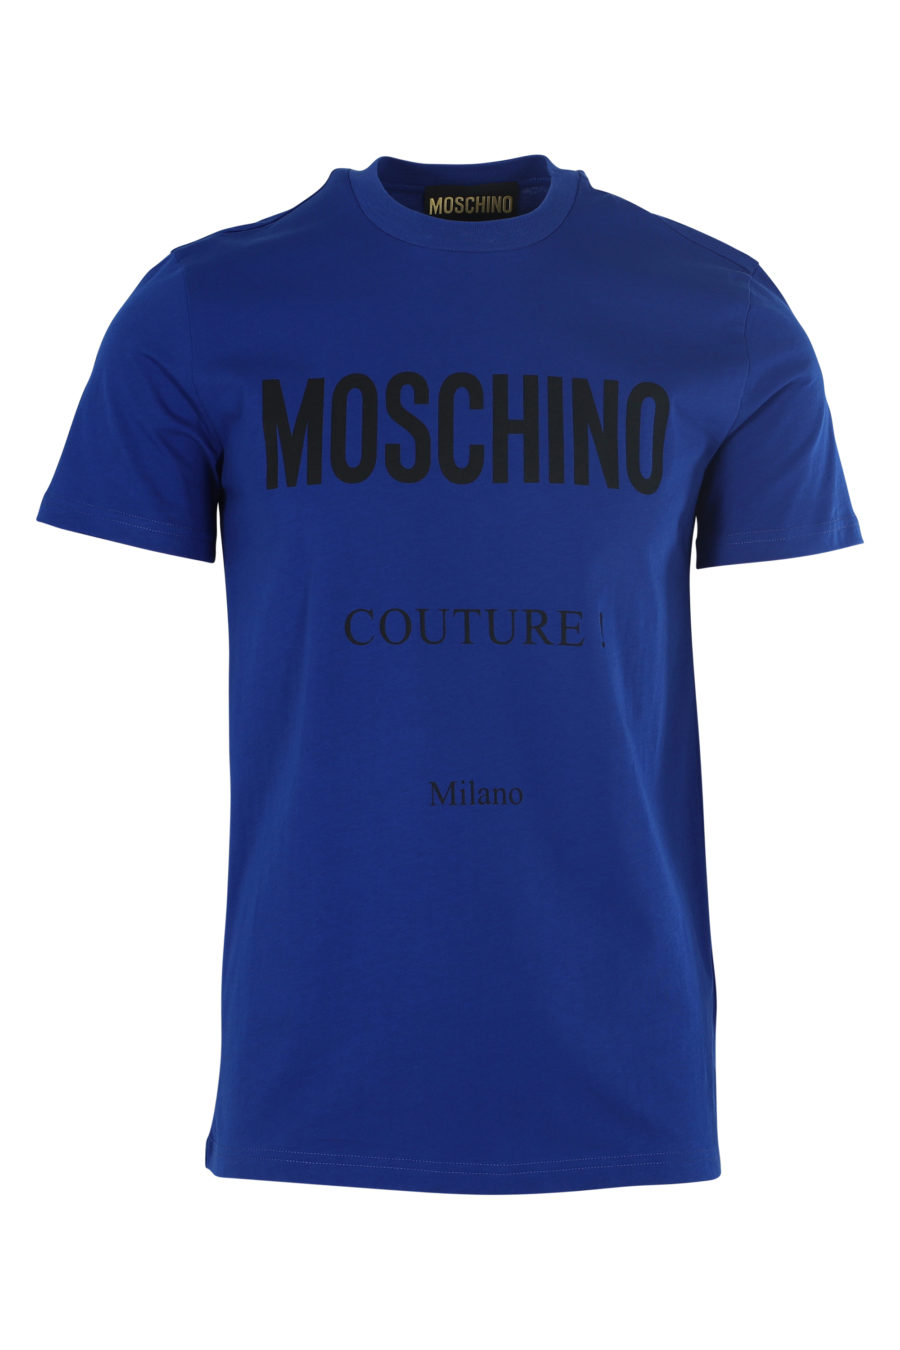 T-shirt azul escura com o logótipo "Couture" - IMG 6096